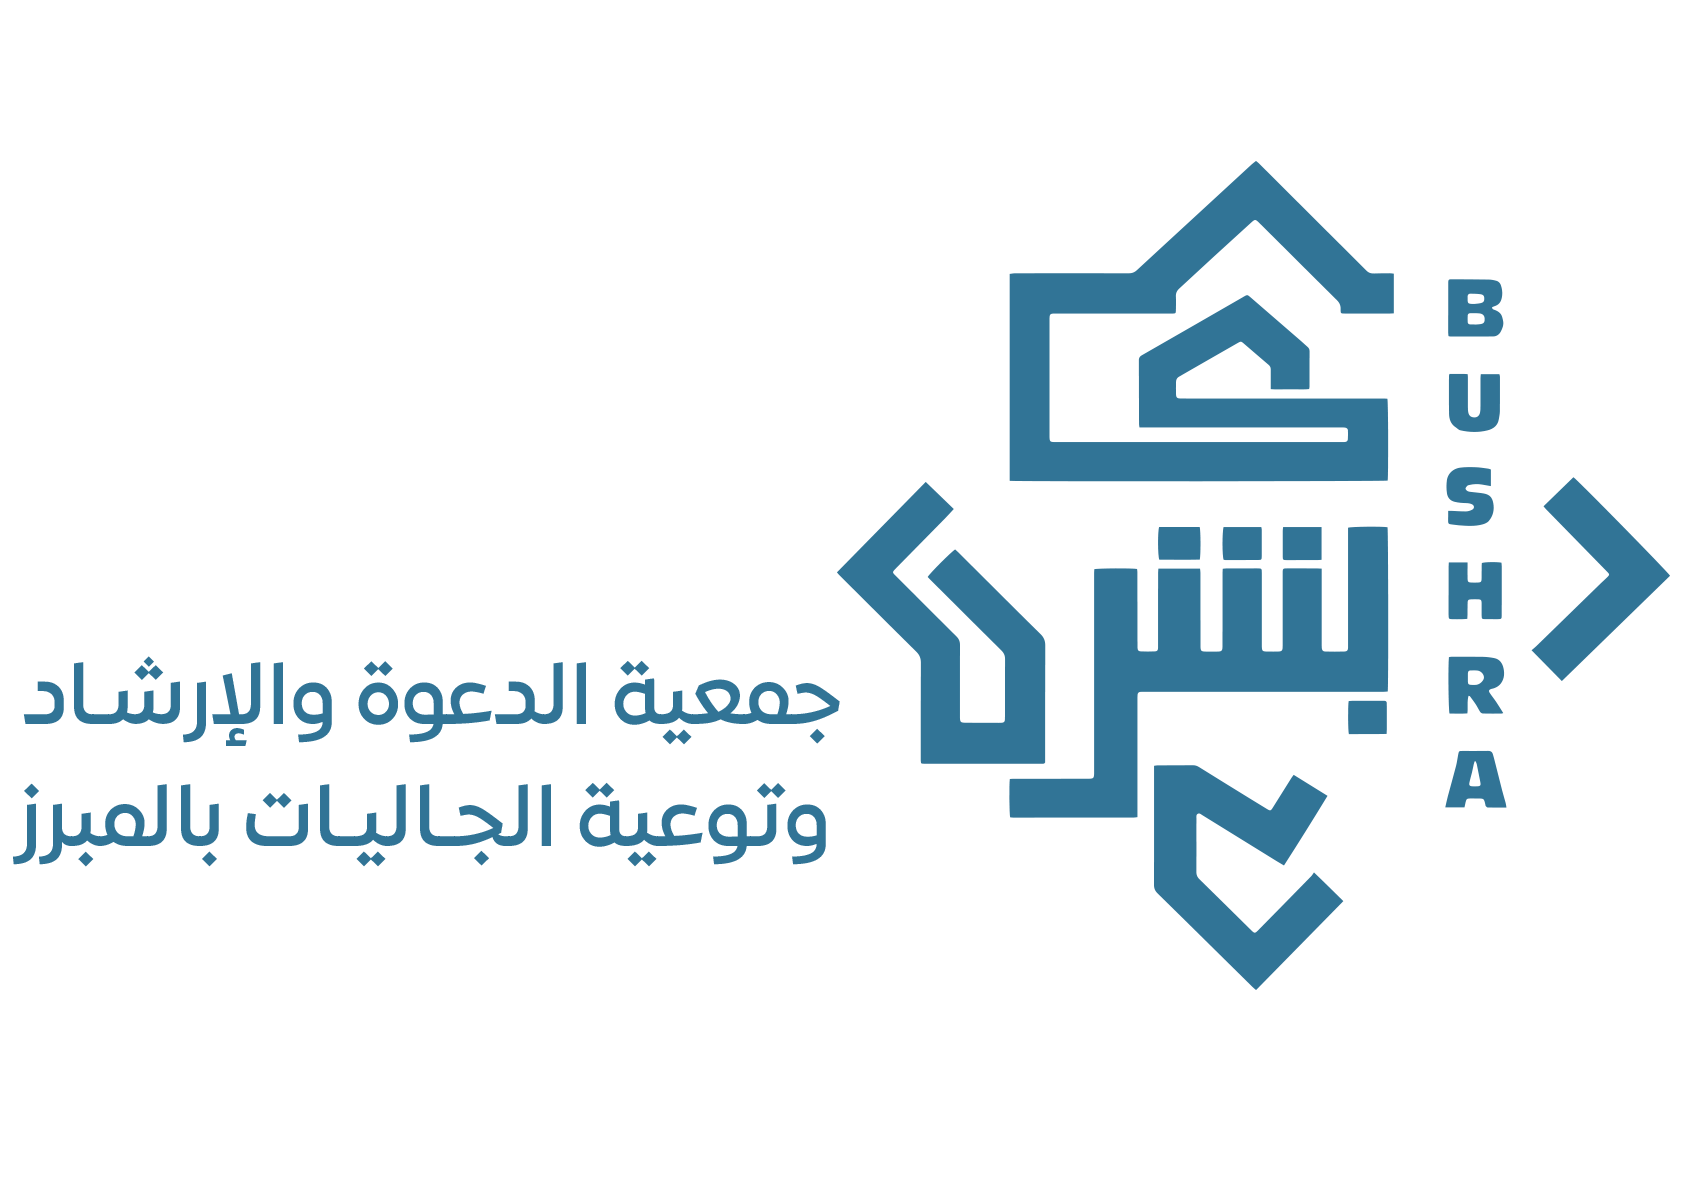 جمعية الدعوة والإرشاد وتوعية الجاليات بالمبرز  (بُشرى)